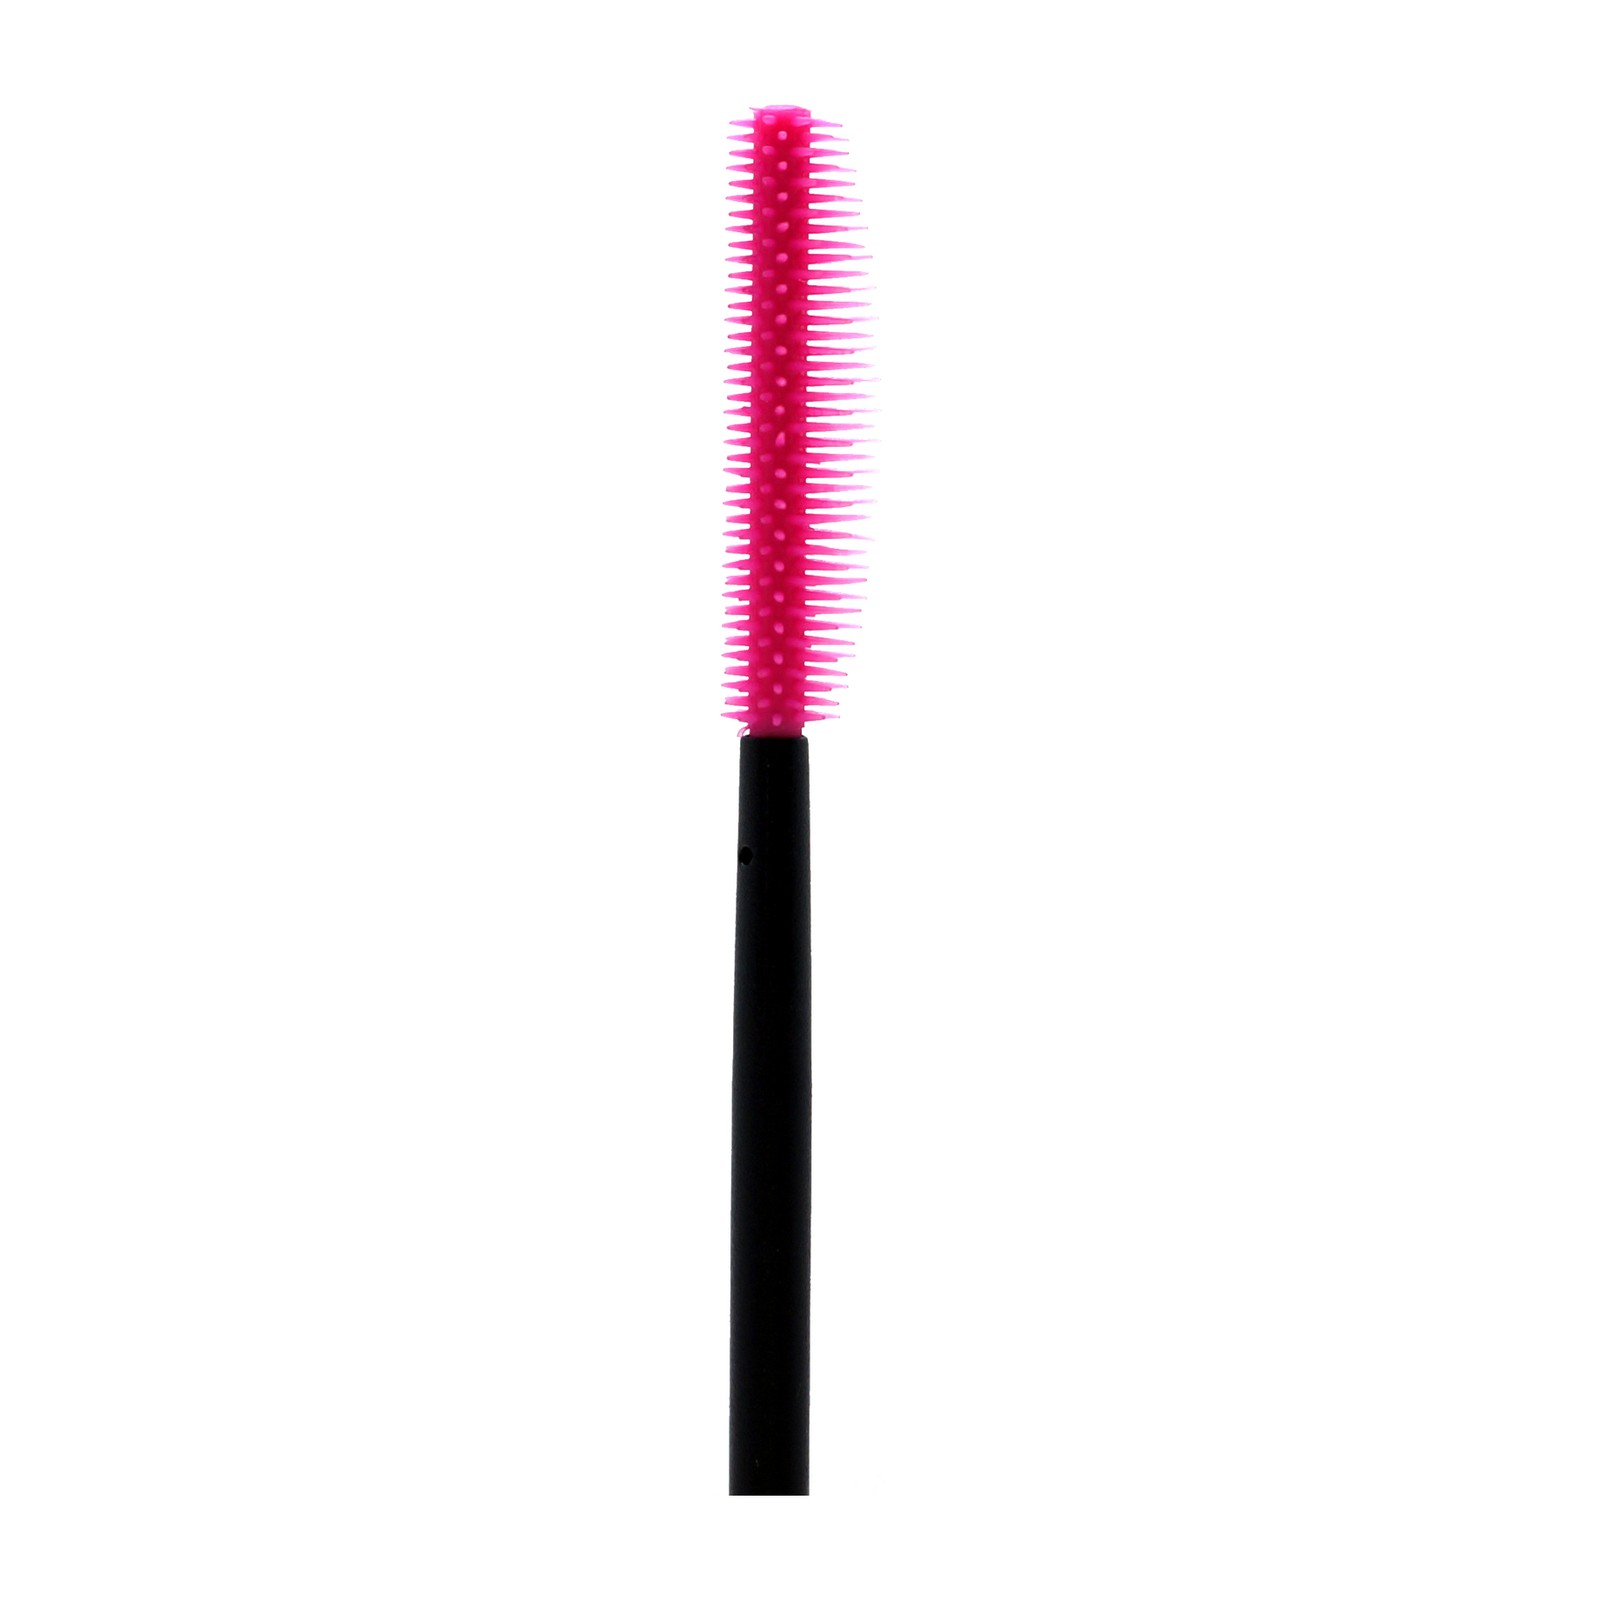 Οδοντόβουρτσες μίας χρήσης σιλικόνης -  50 τεμ / σετ, ροζ